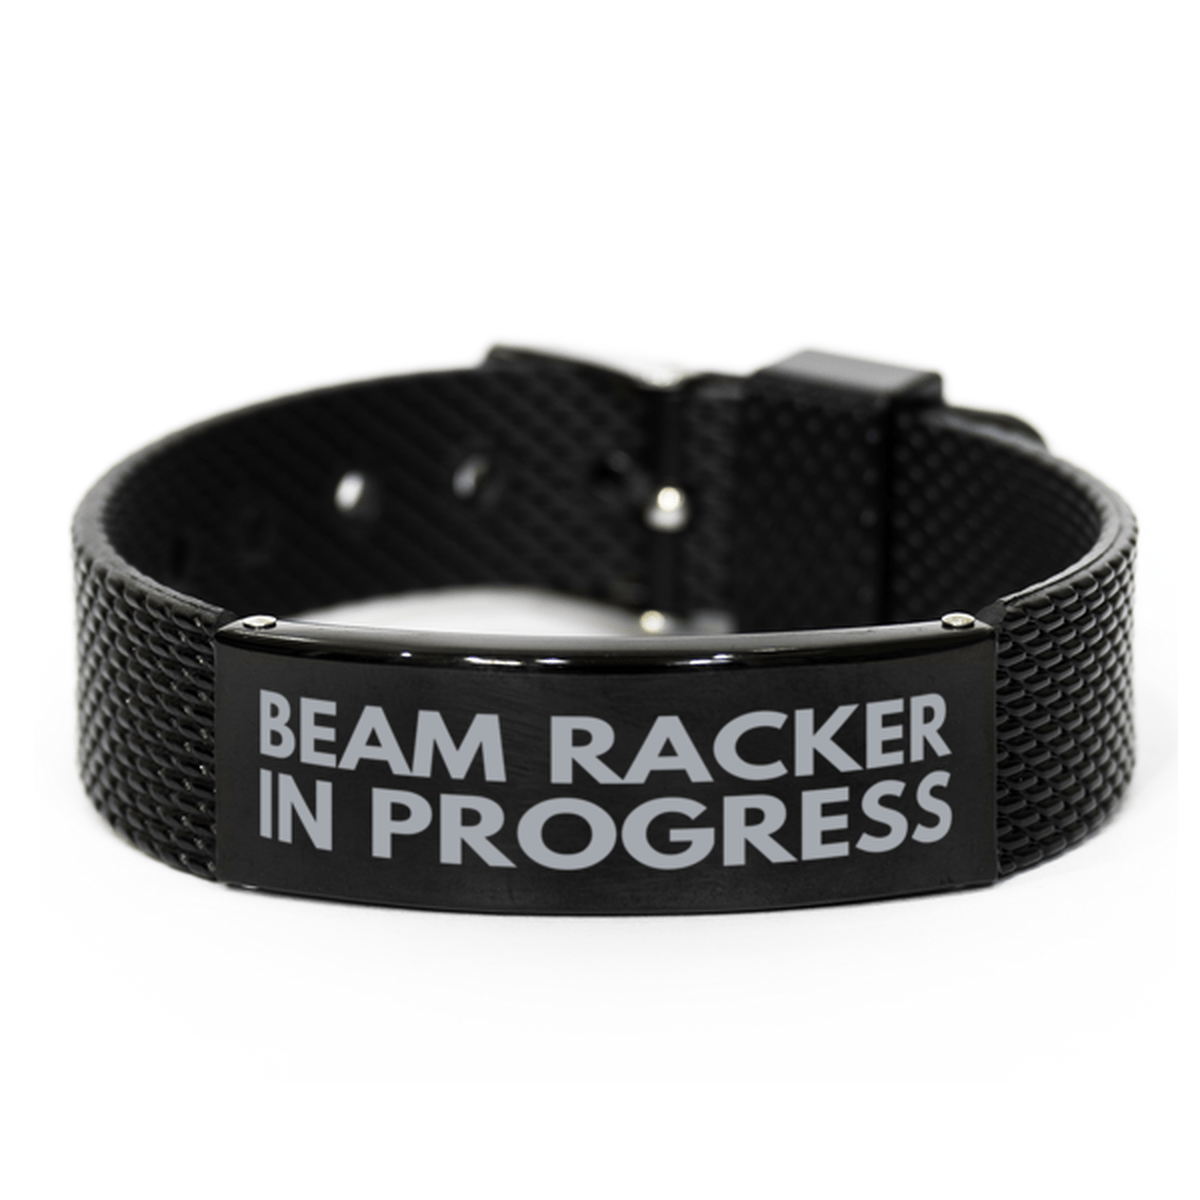 Inspirational Beam Racker Black Shark Mesh Bracelet, Beam Racker In Progress, Best Graduation Gifts for Students